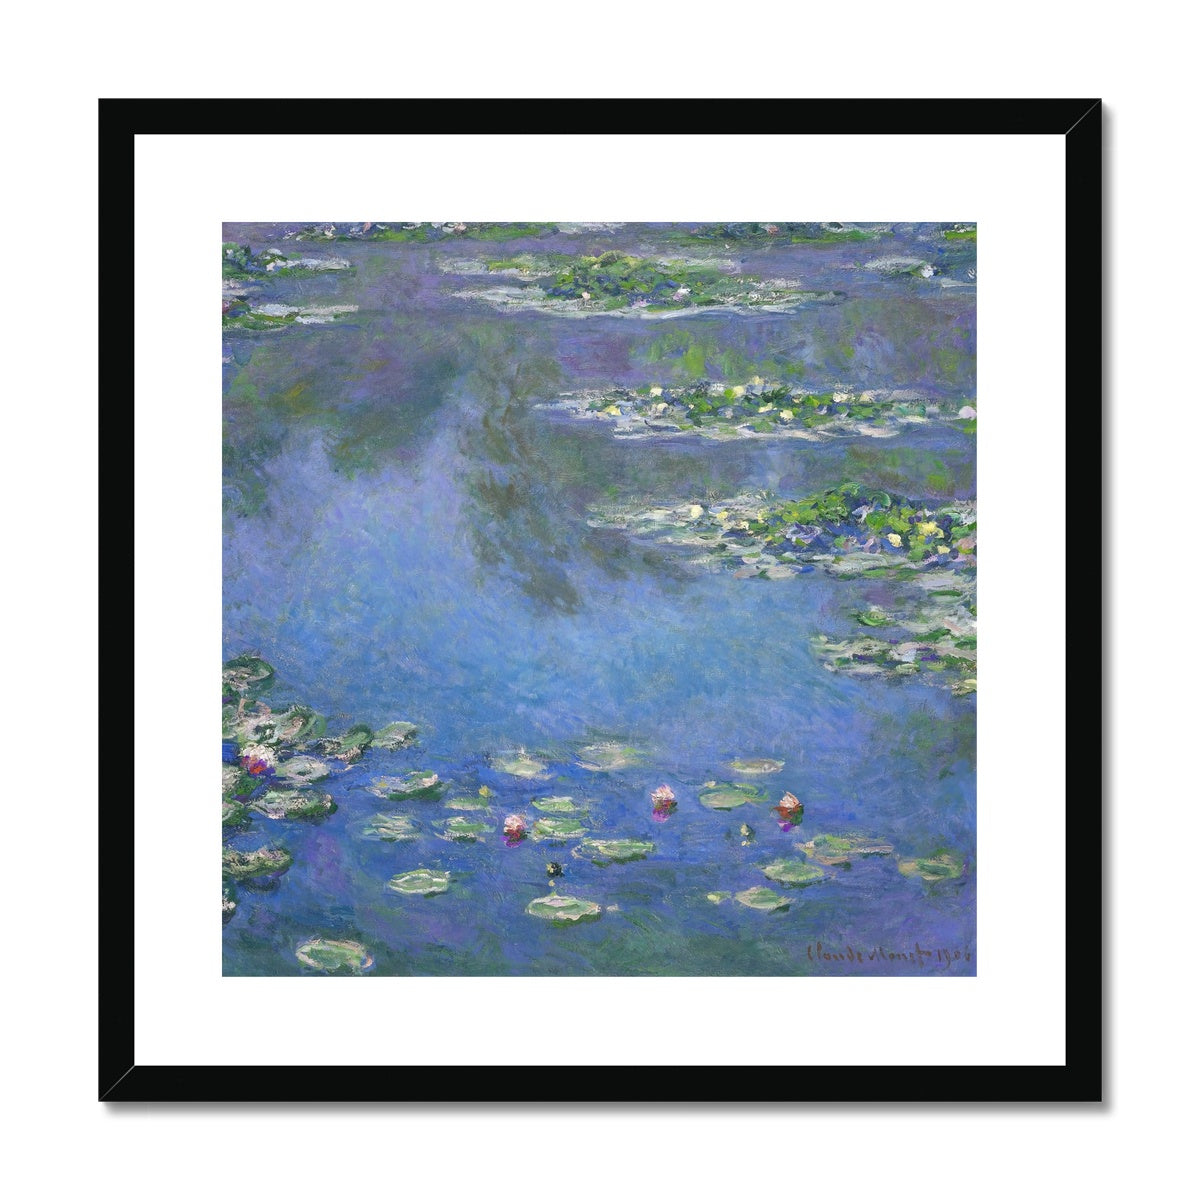 Claude Monet Framed Open Edition Art Print. 'Water Lilies'. Art Gallery Historic Art